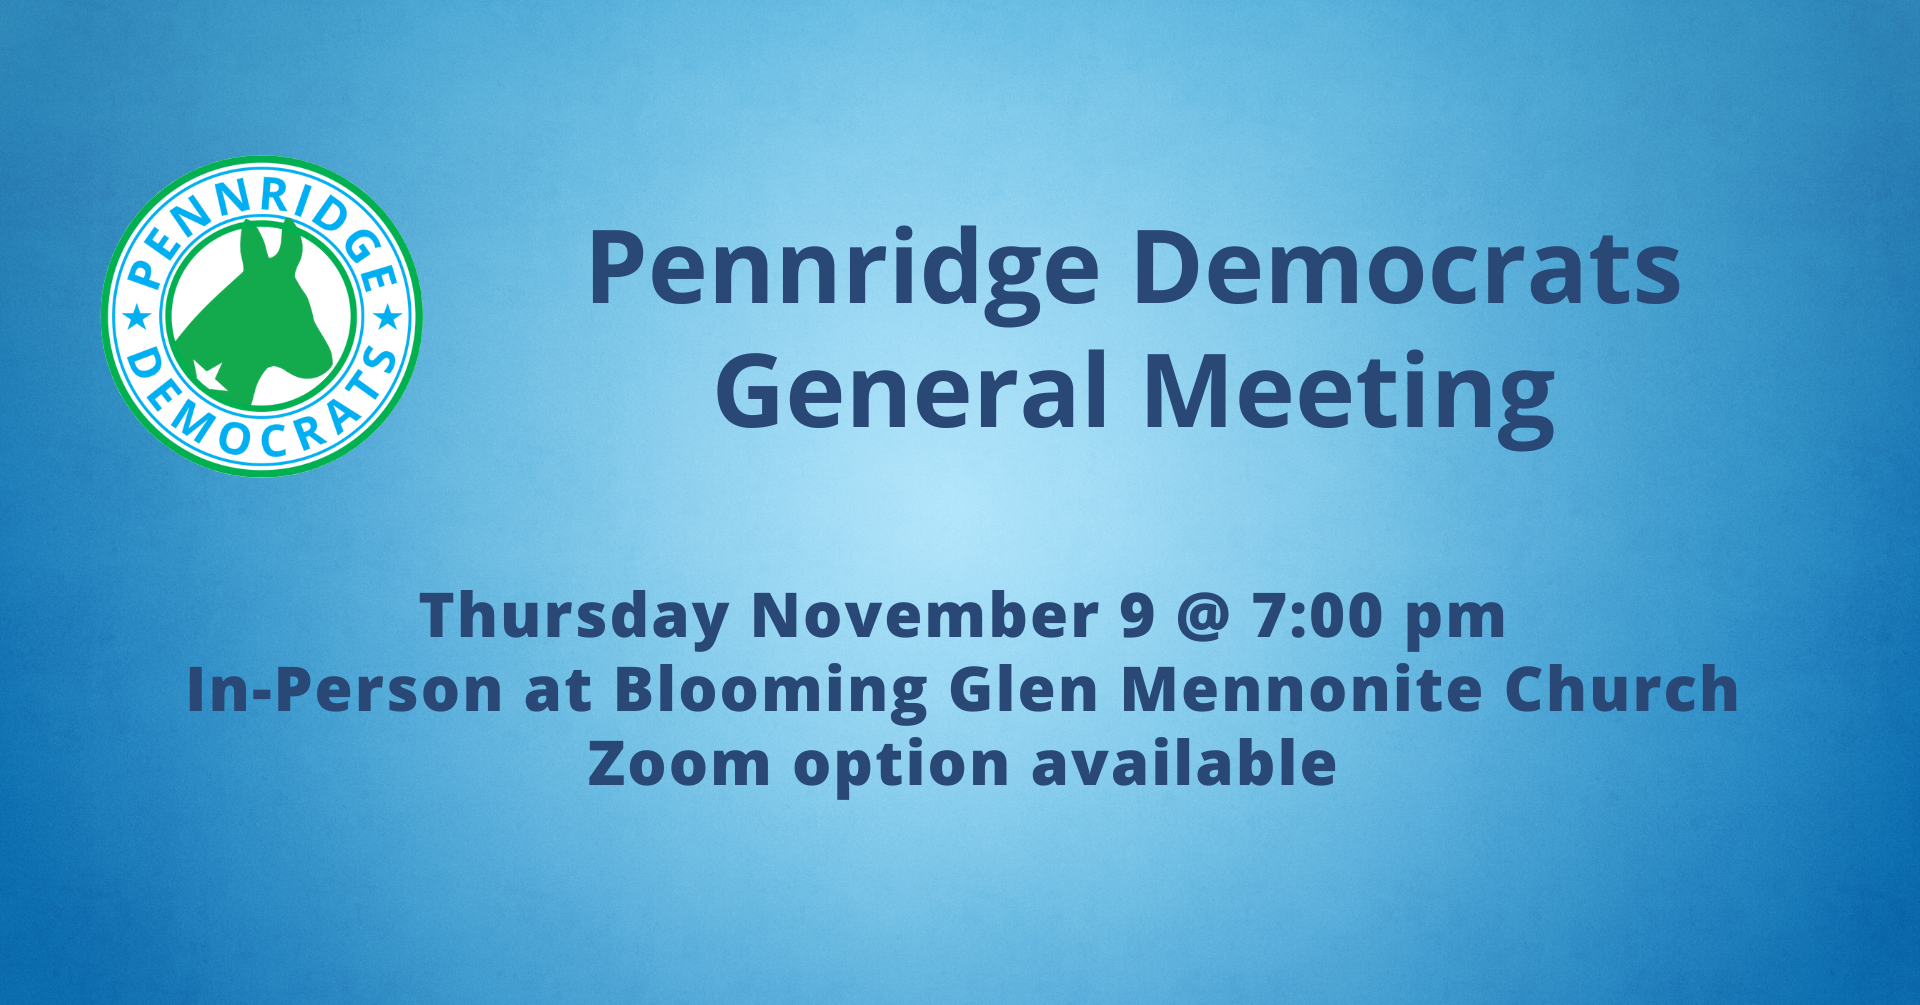 Pennridge Democrats General Meeting Novermber 9 at 7:00 PM